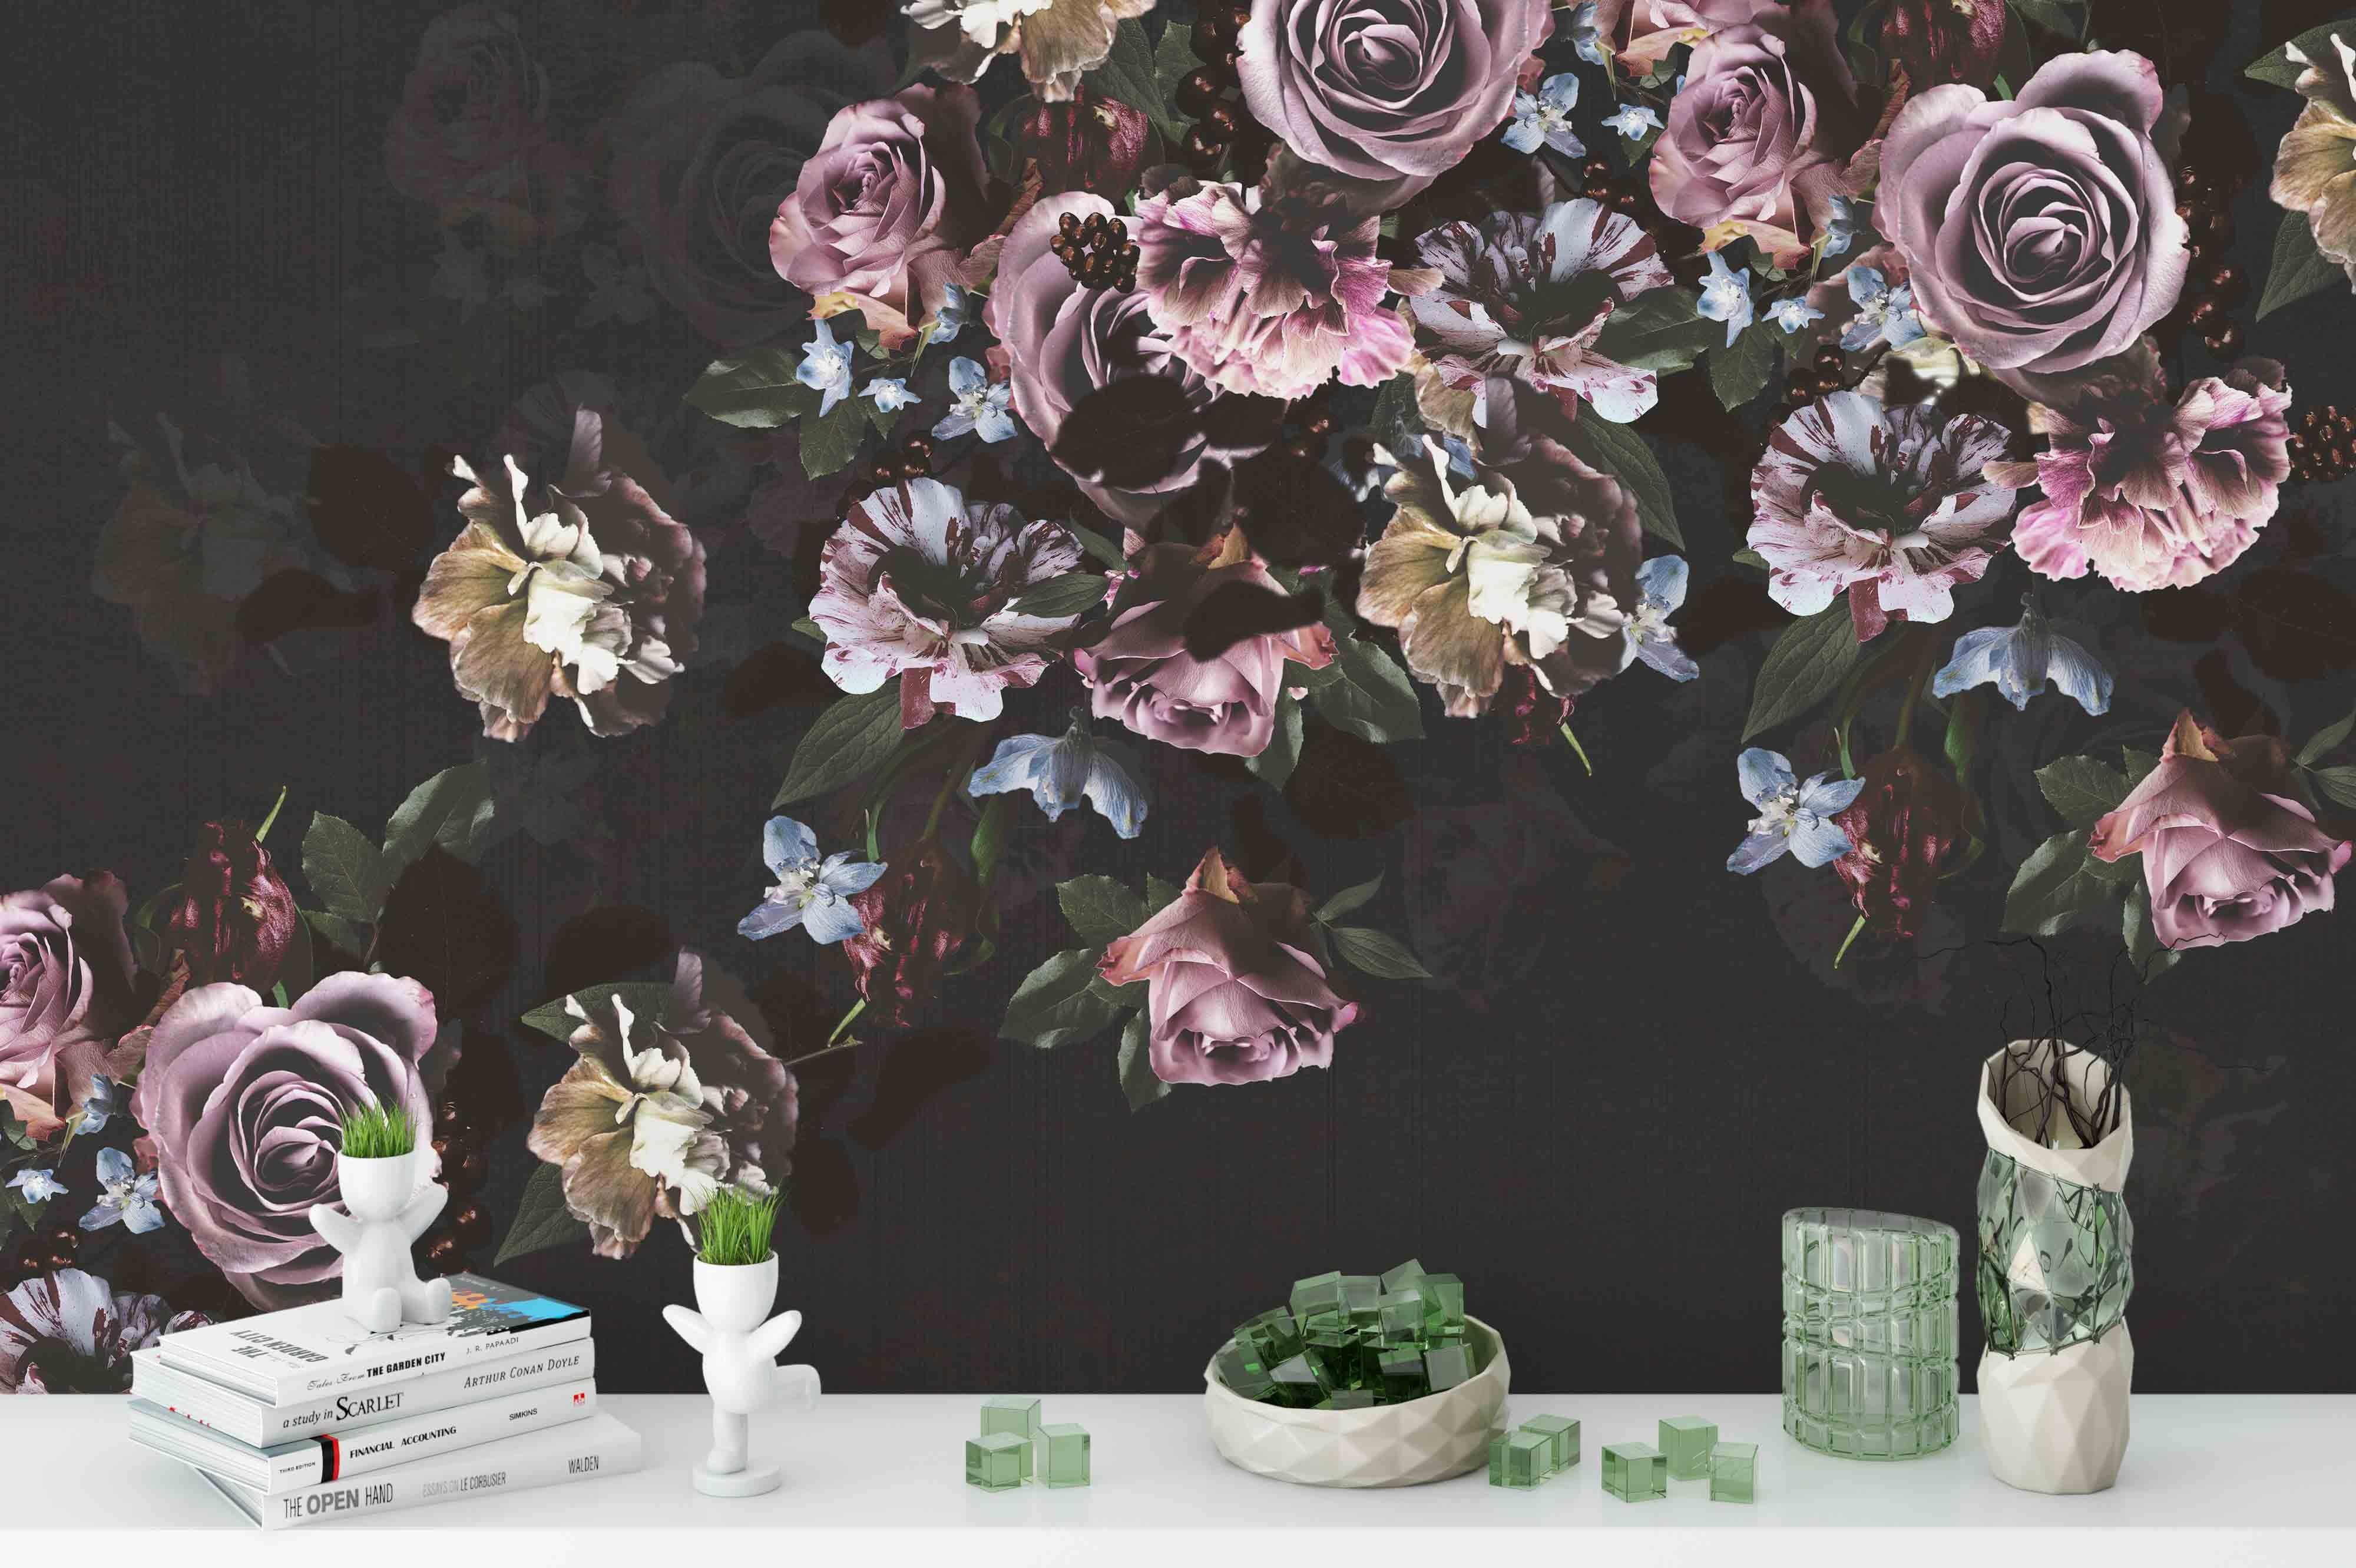 3D Flower Cluster Wall Mural Wallpaper 64- Jess Art Decoration